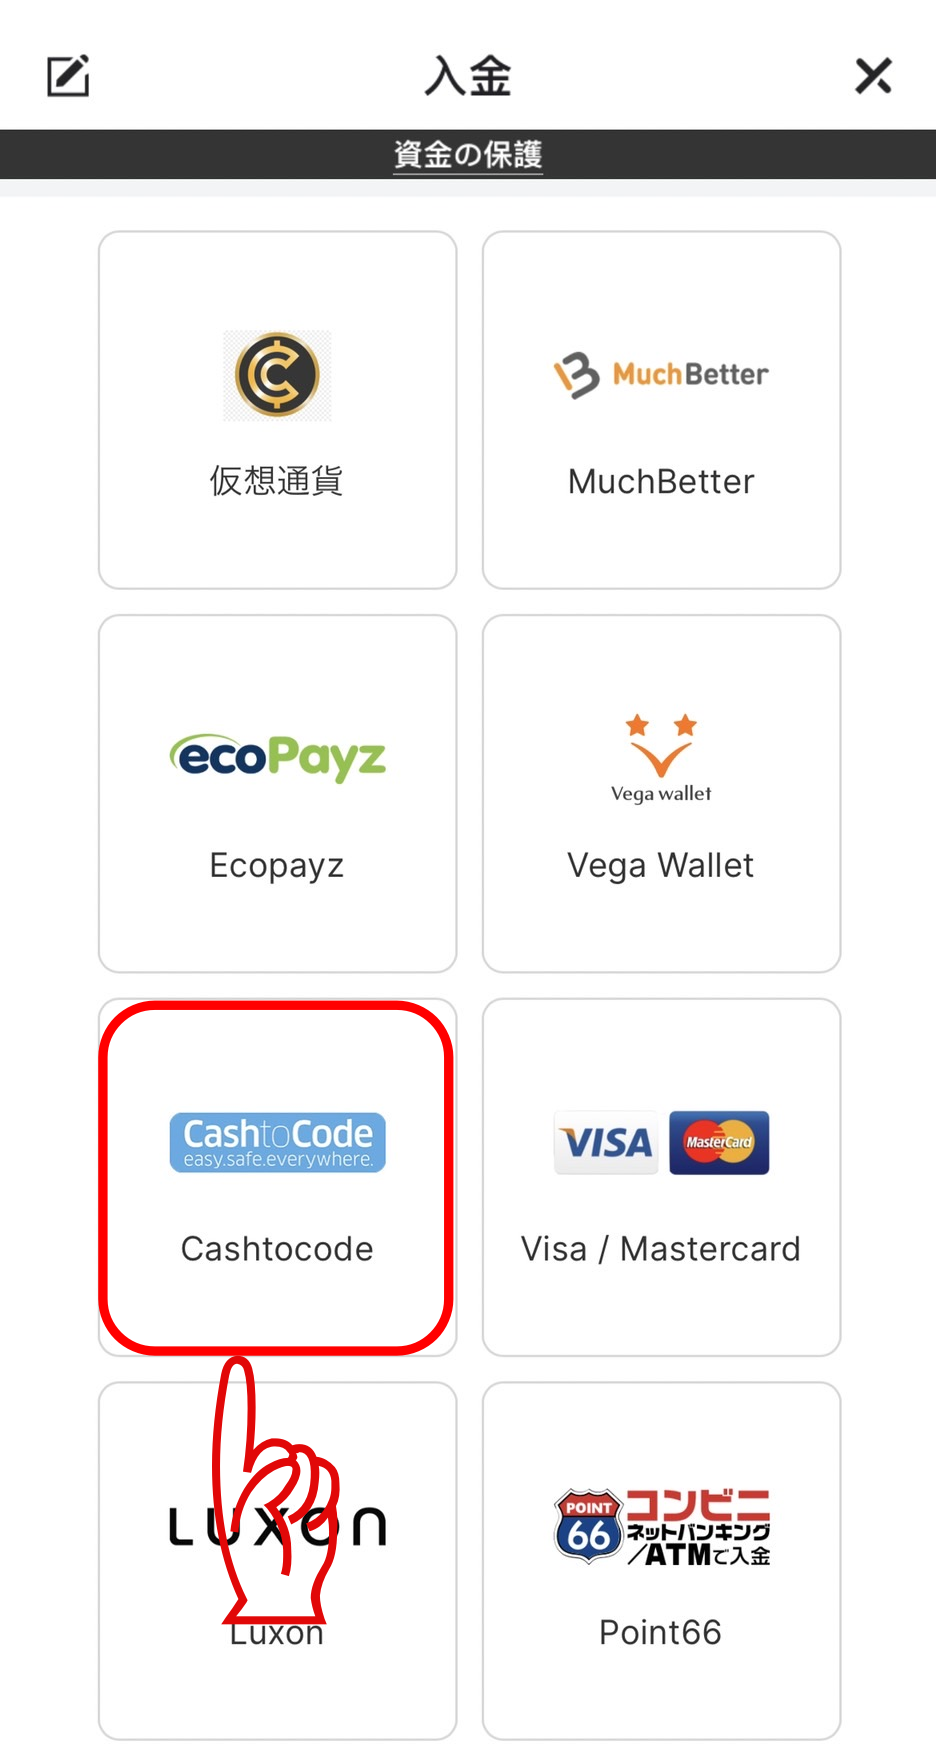 「Cashtocode」を選択